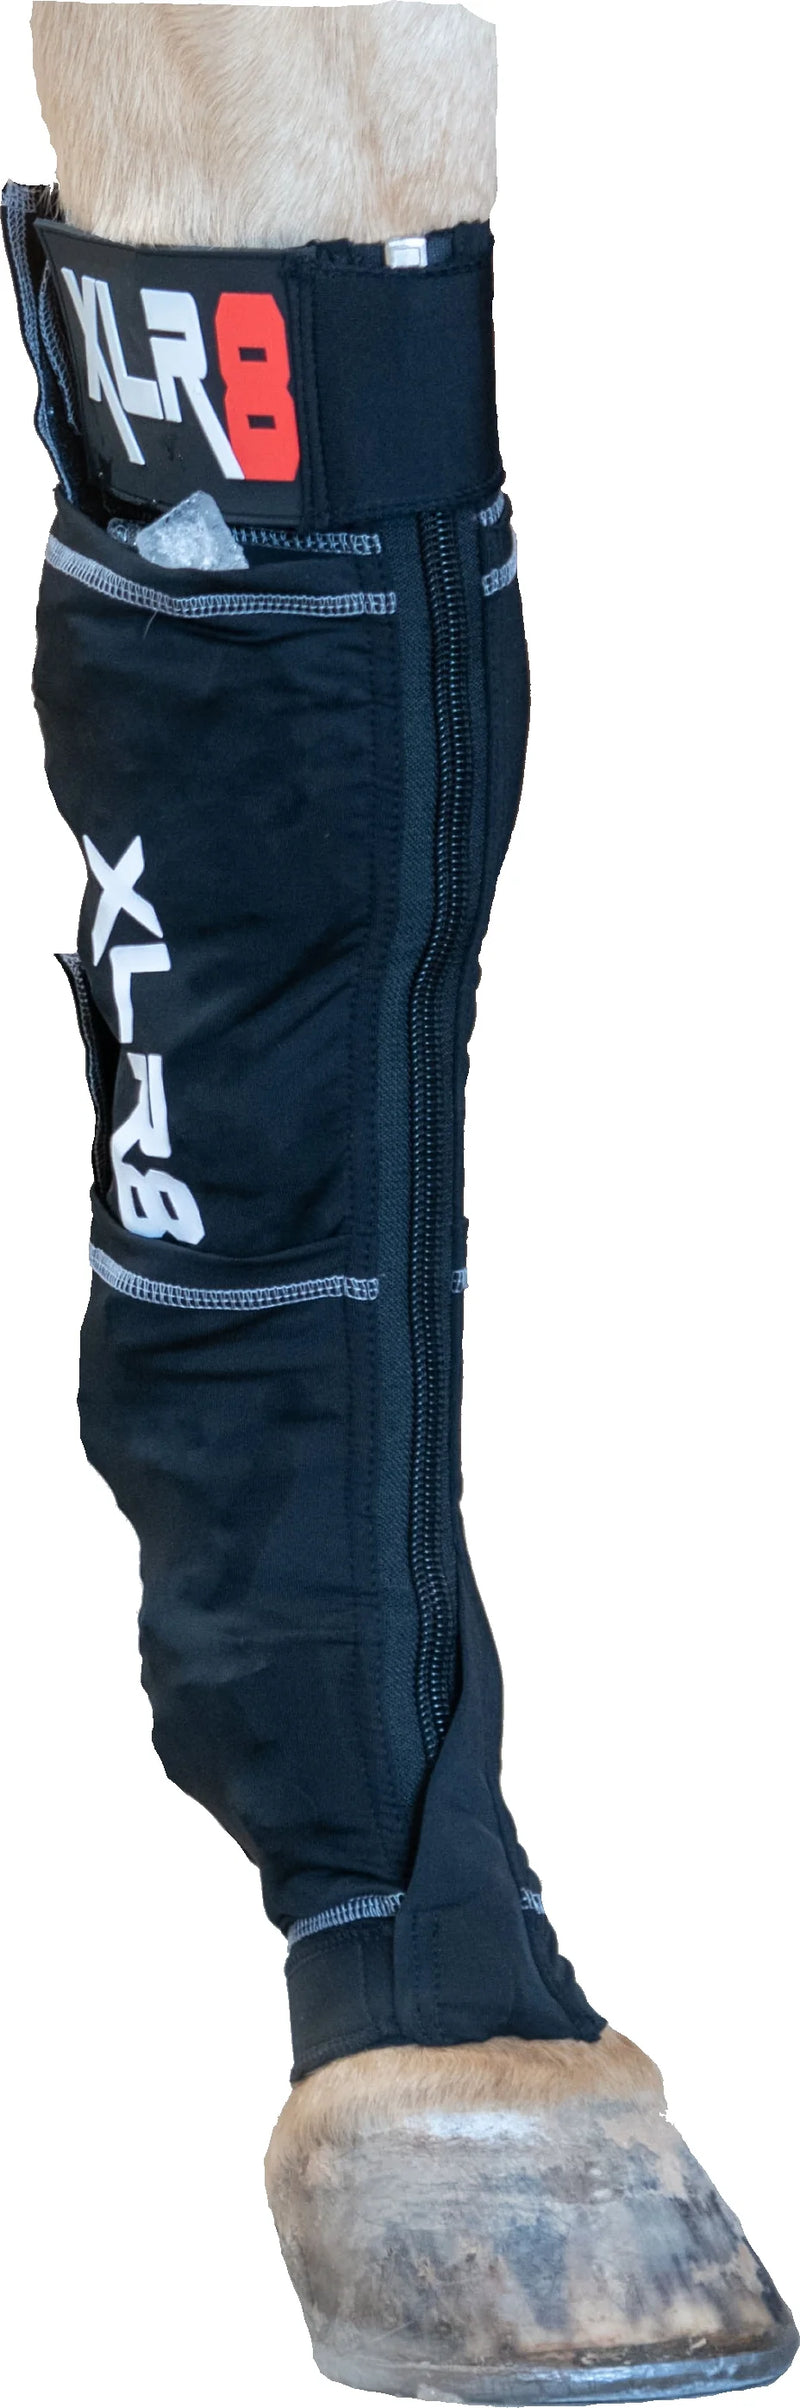 XLR8 HIND Cryo Ice Boots